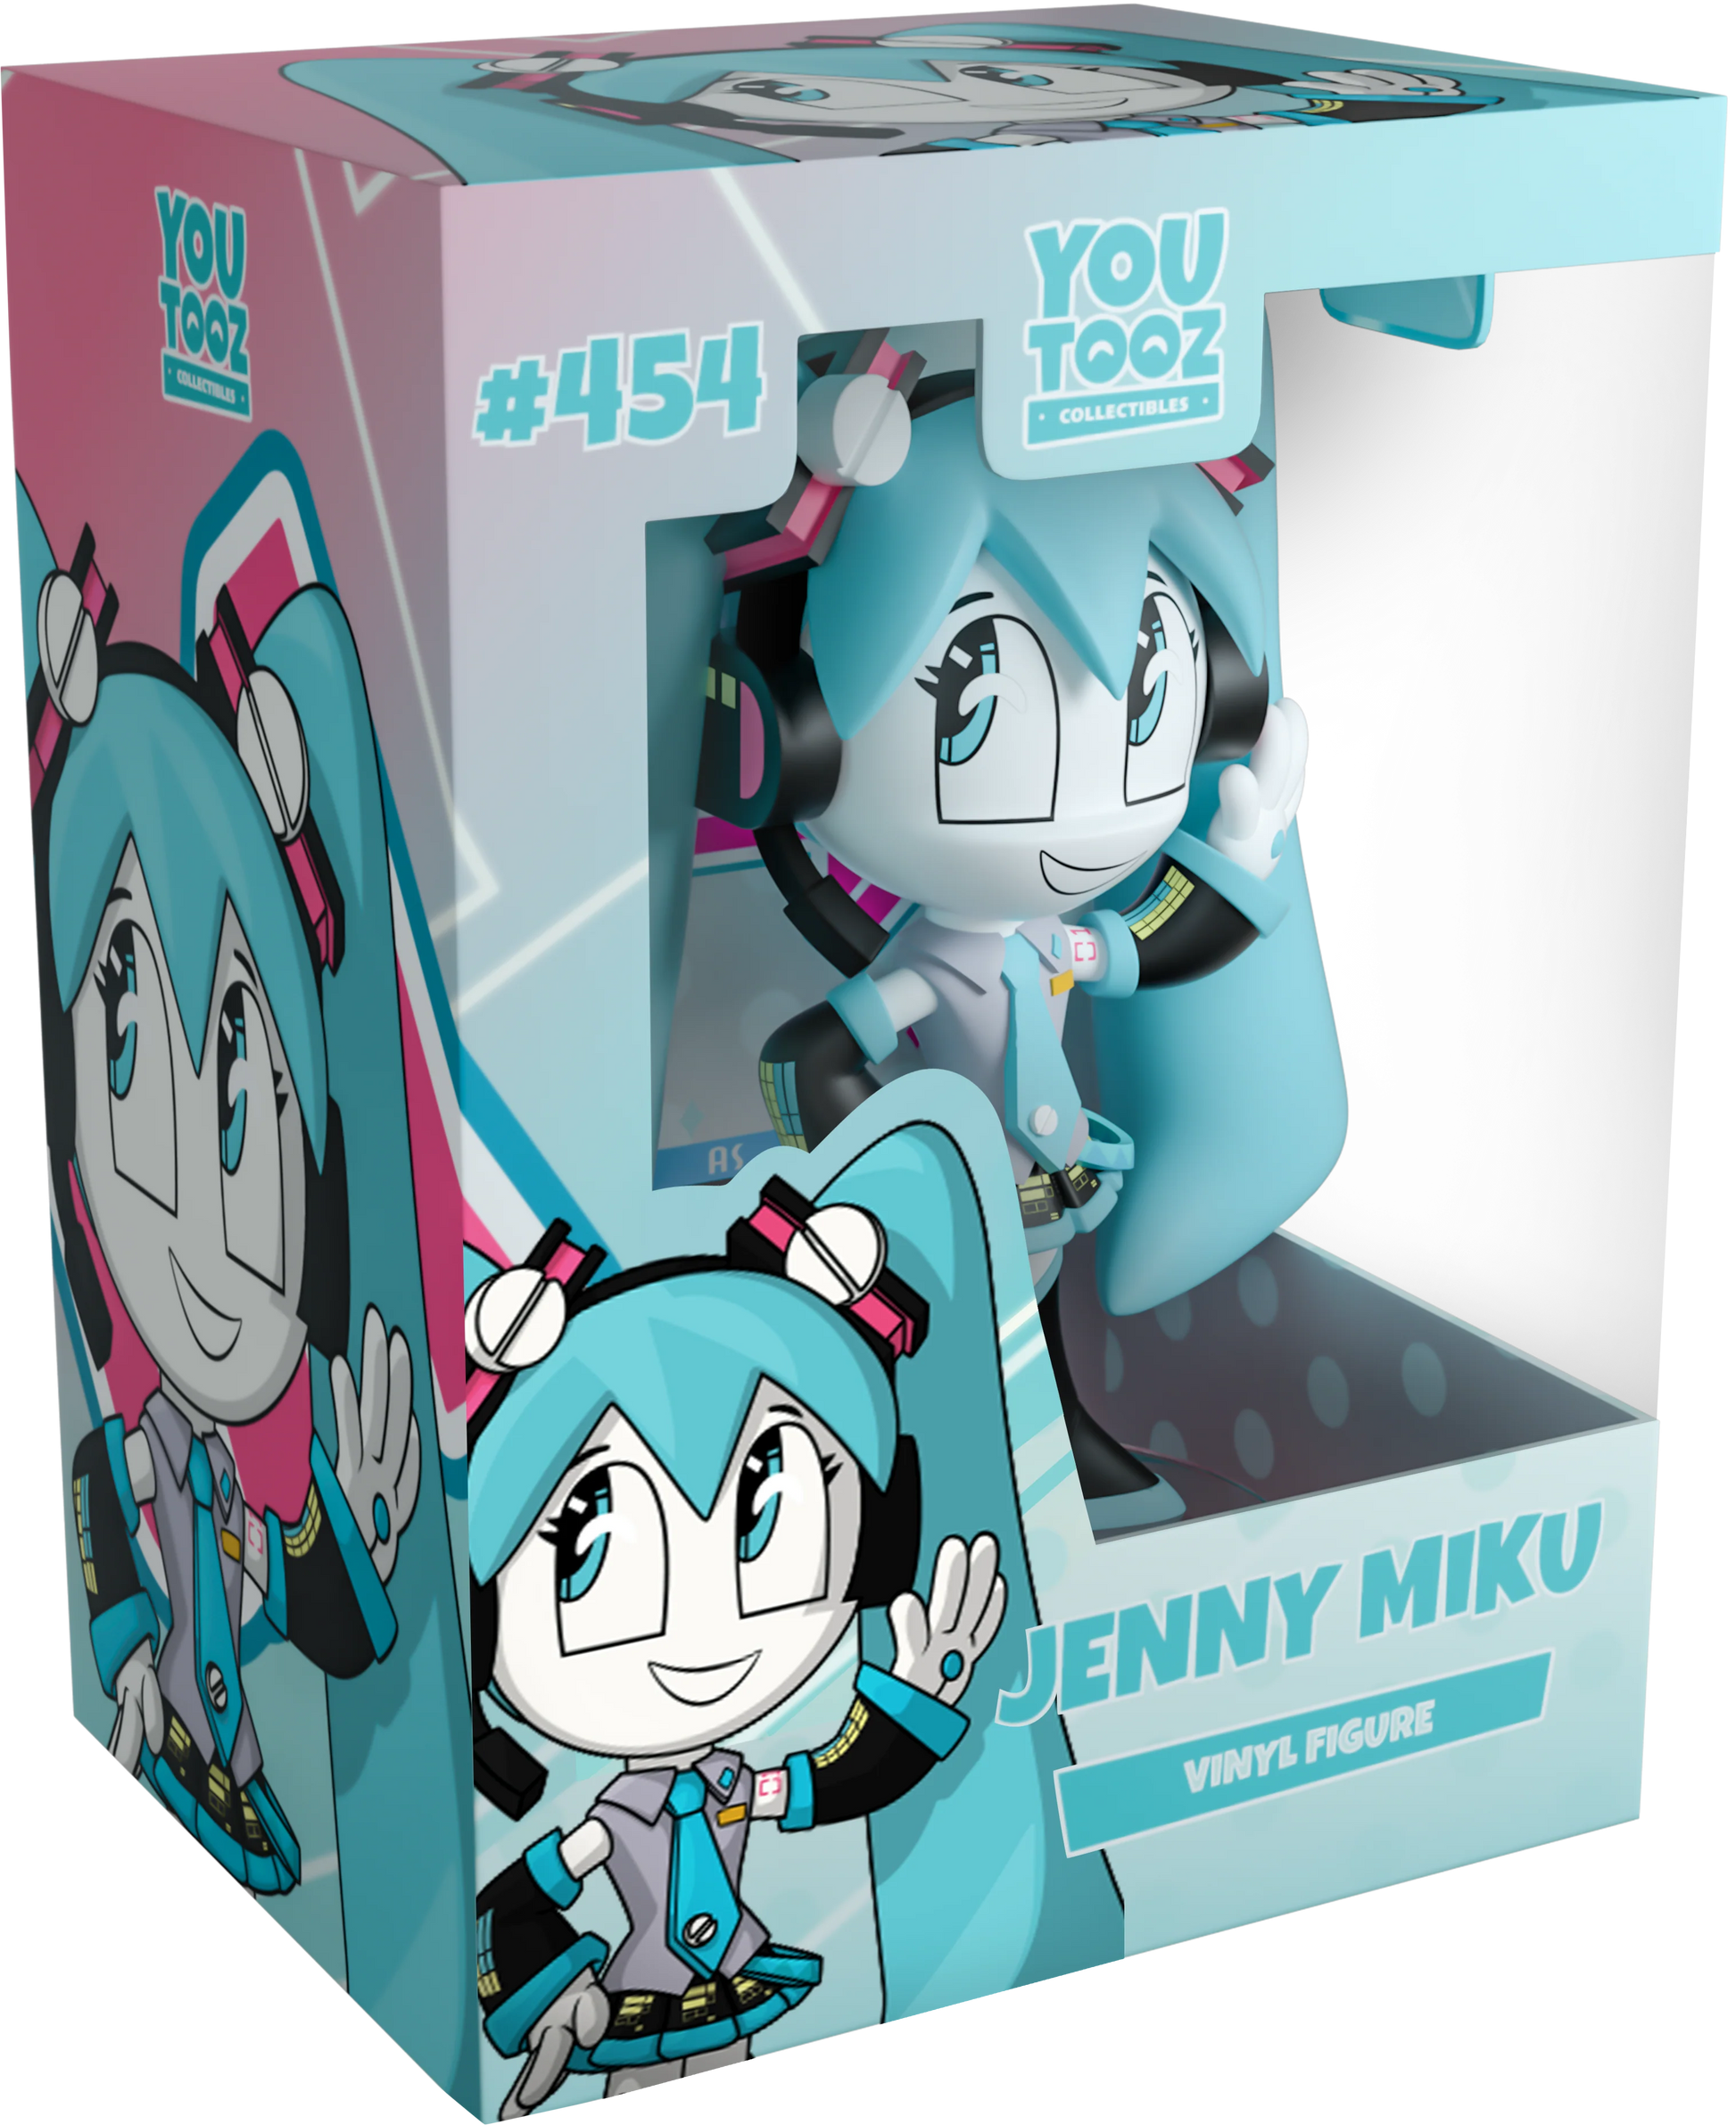 Hatsune Miku Vinyl figurine Jenny Miku Youtooz Viacom